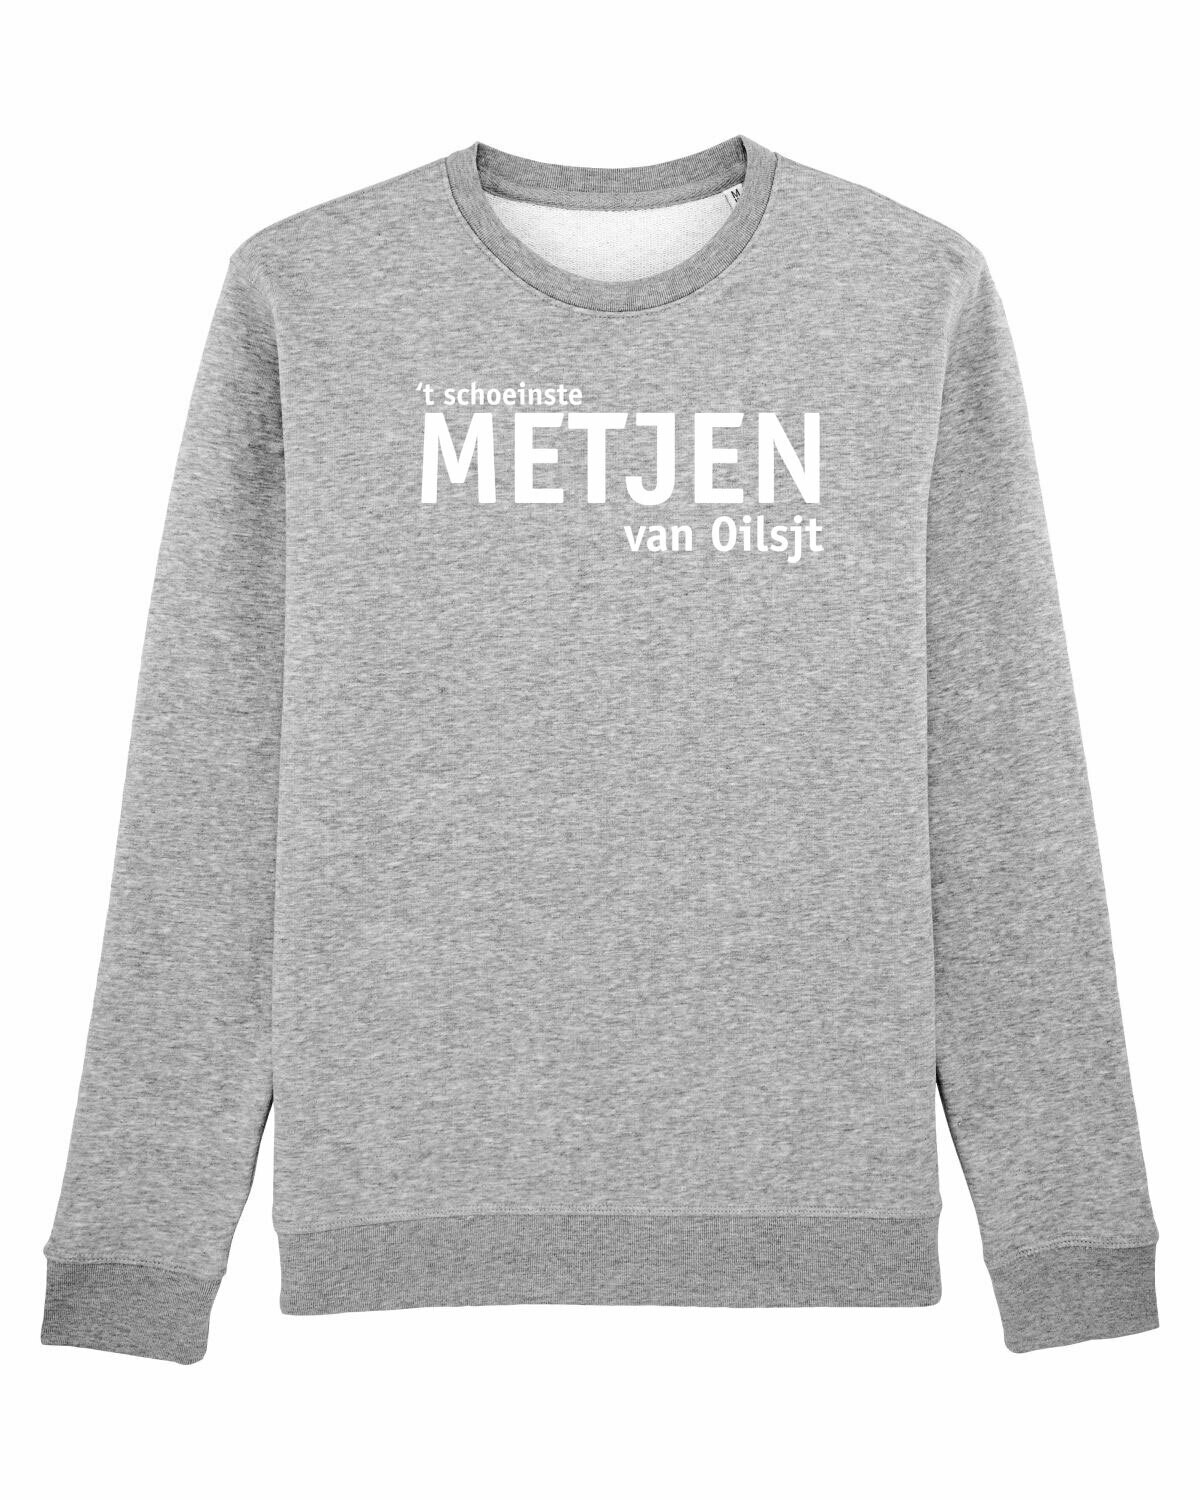 Sweater Metjen